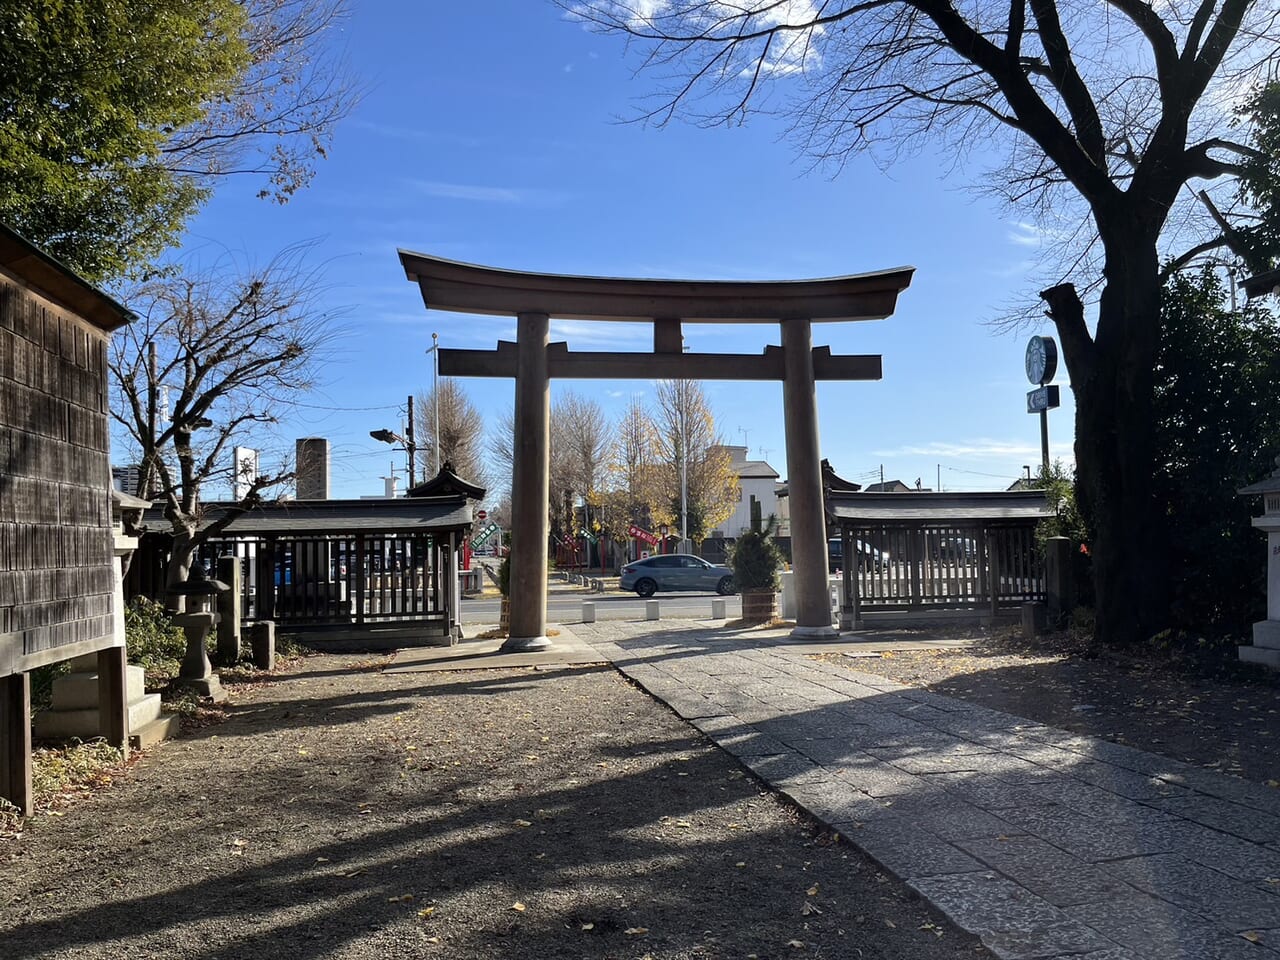 須賀神社鳥居